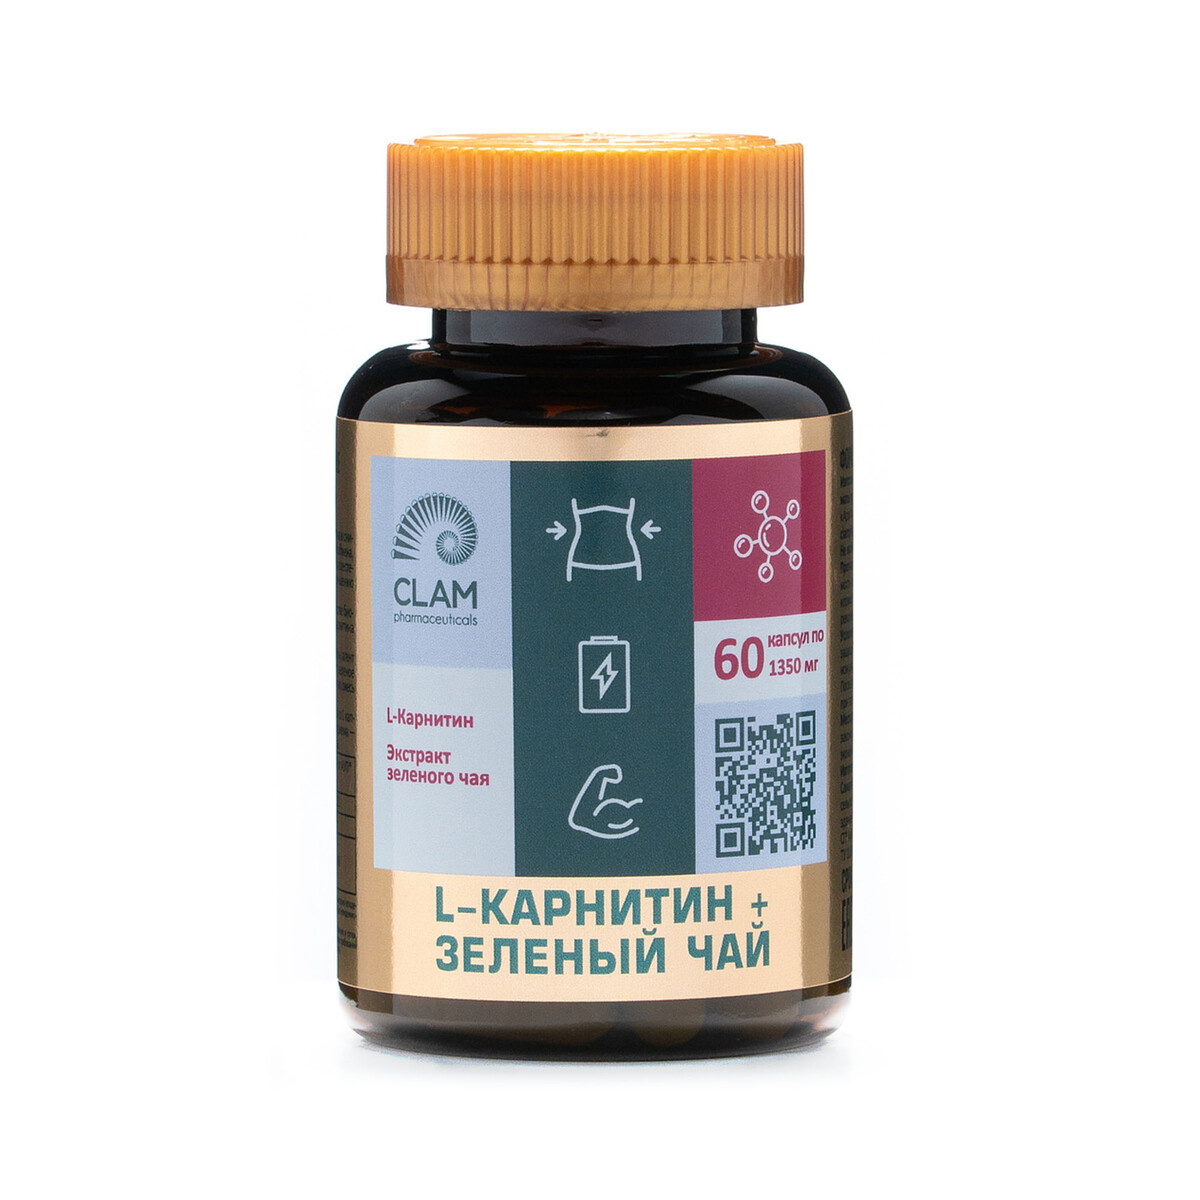 L-карнитин + зеленый чай - нормализация веса - для похудения и повышения энергии - 60 капсул